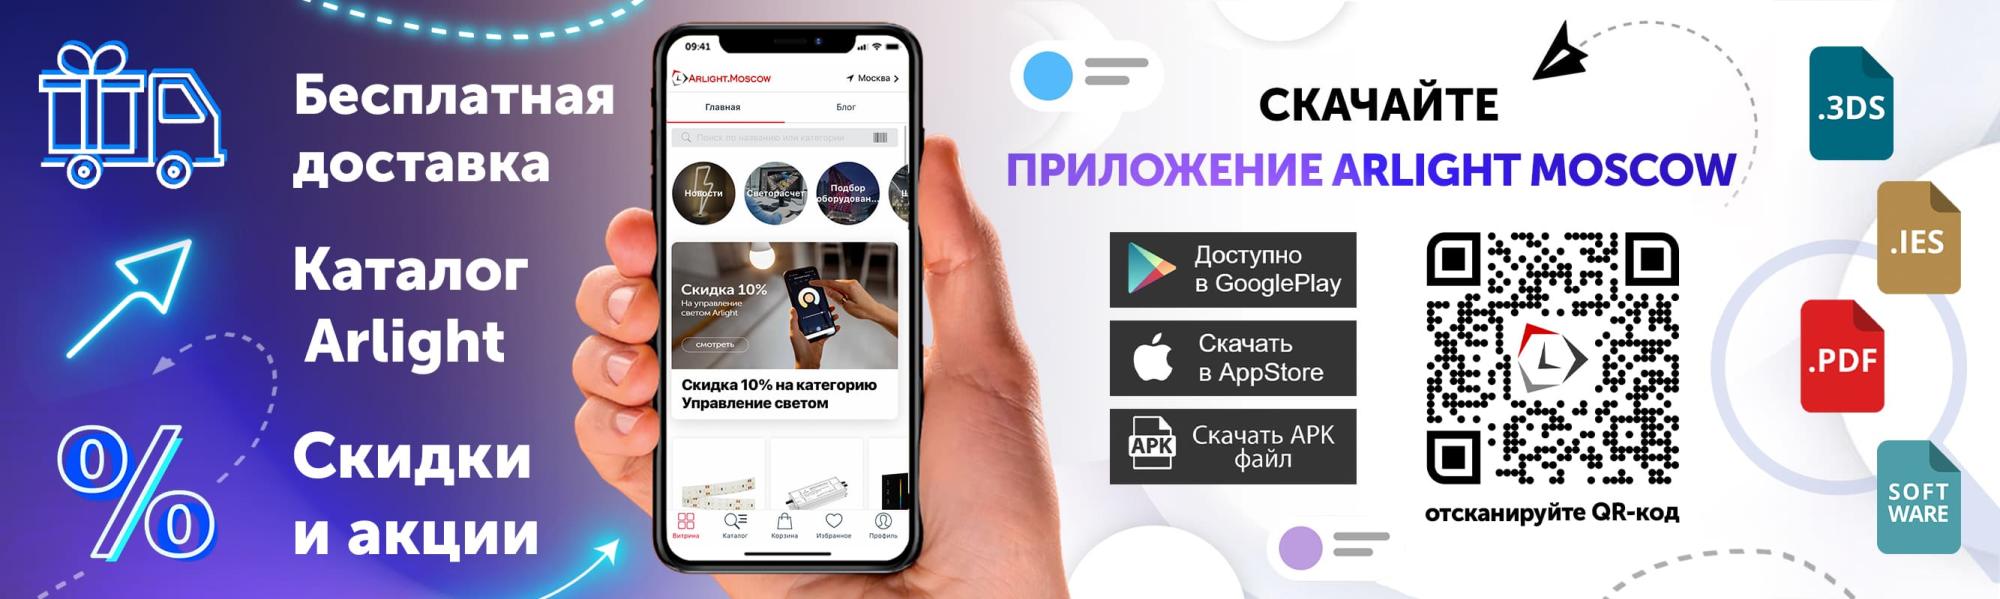 Официальное приложение Arlight Moscow с полным каталогом и бесплатной доставкой!